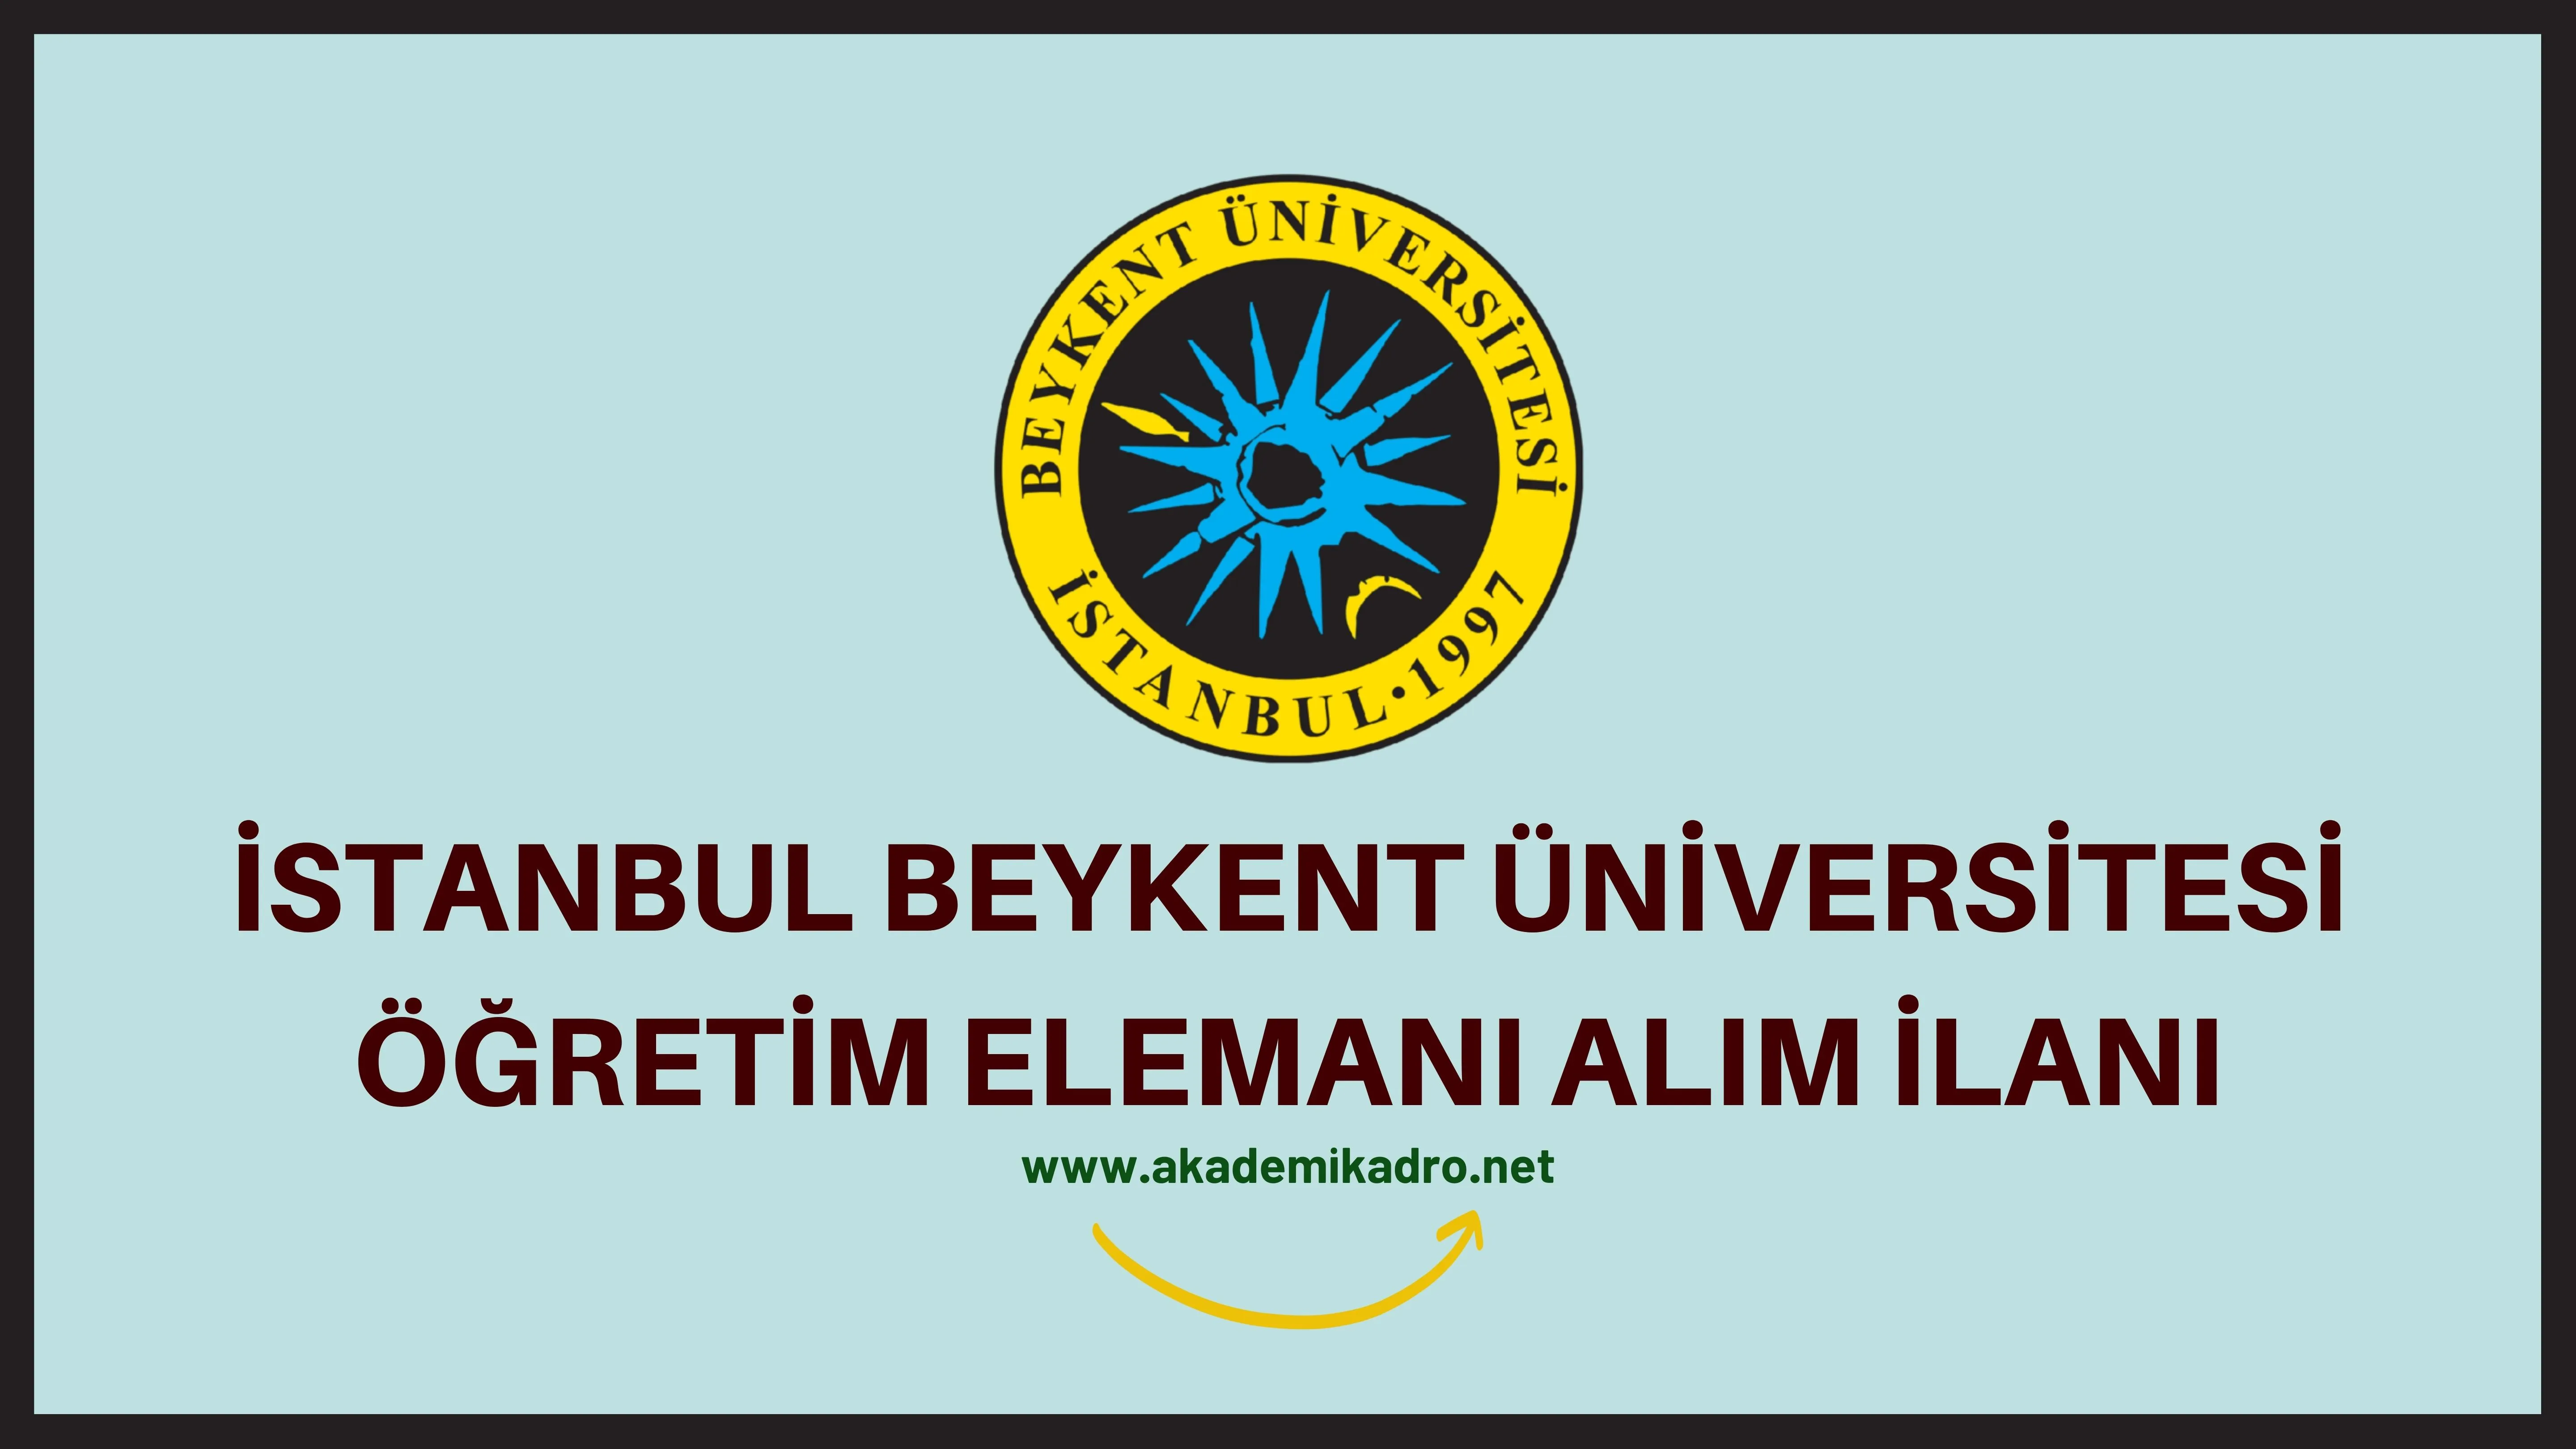 Beykent Üniversitesi 8 Araştırma görevlisi ve birçok alandan 24 öğretim üyesi alacak.